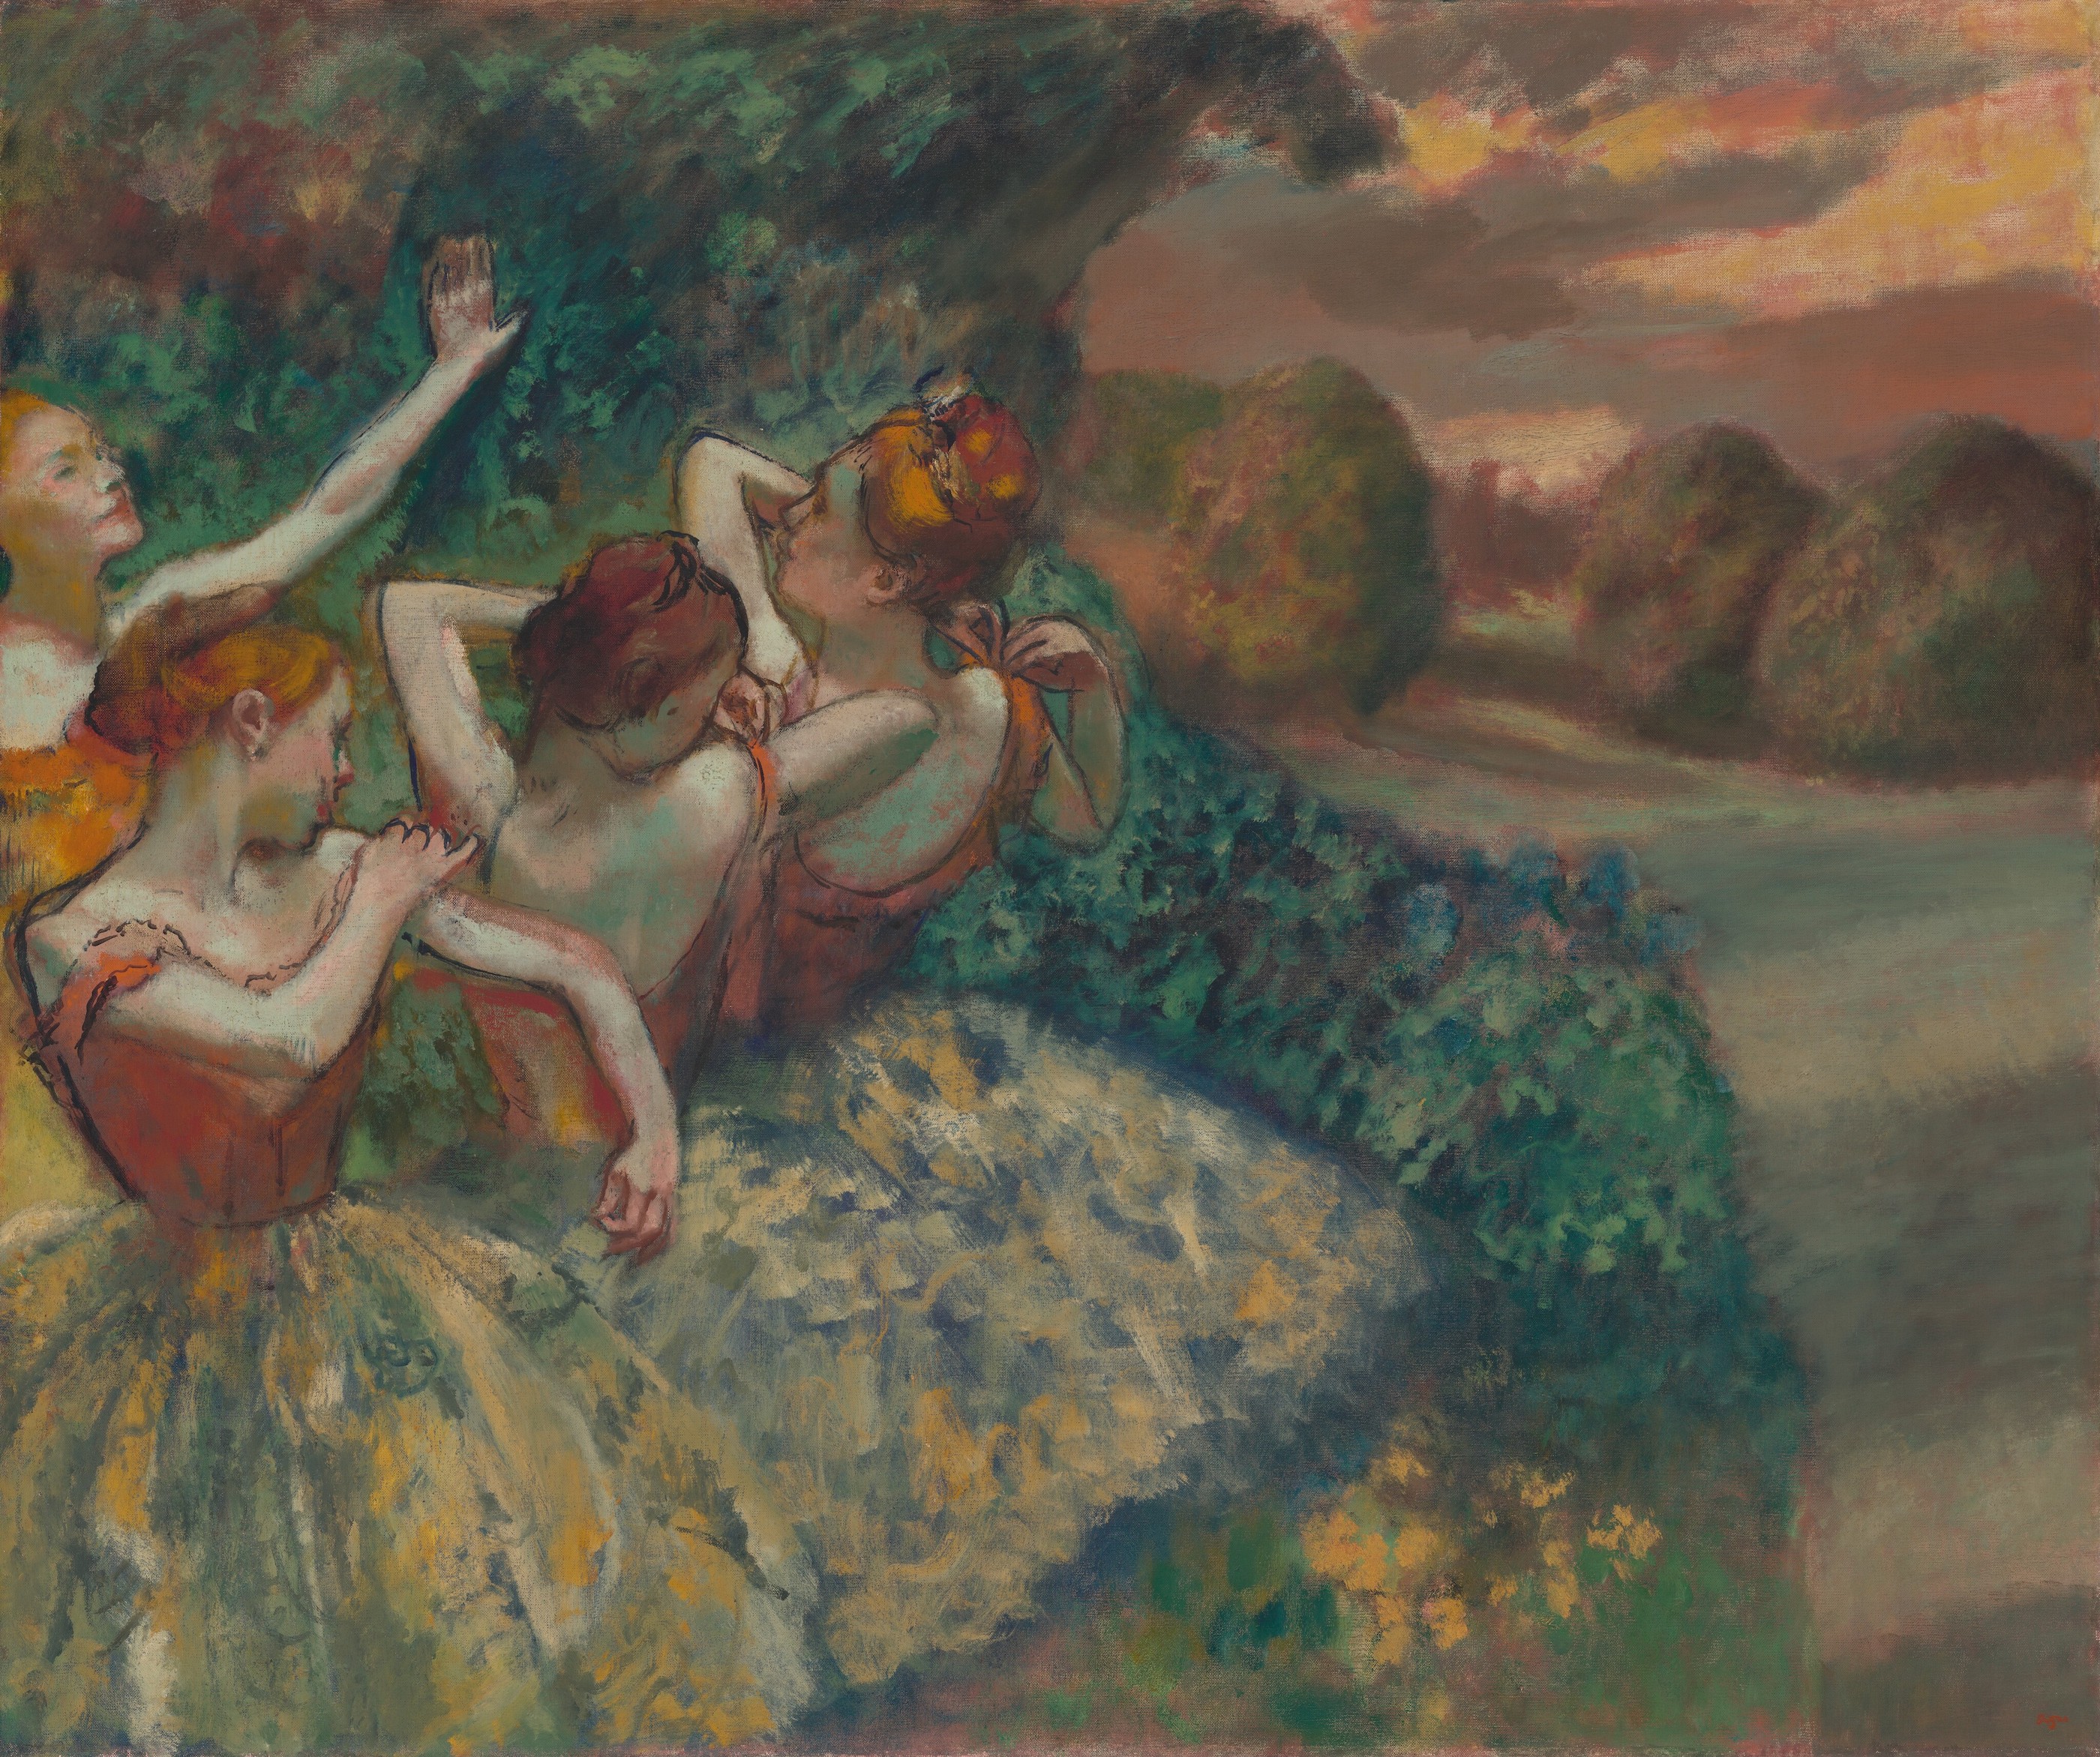 ４人の踊り子 by Edgar Degas - 1899年 - 151.1 x 180.2 cm 